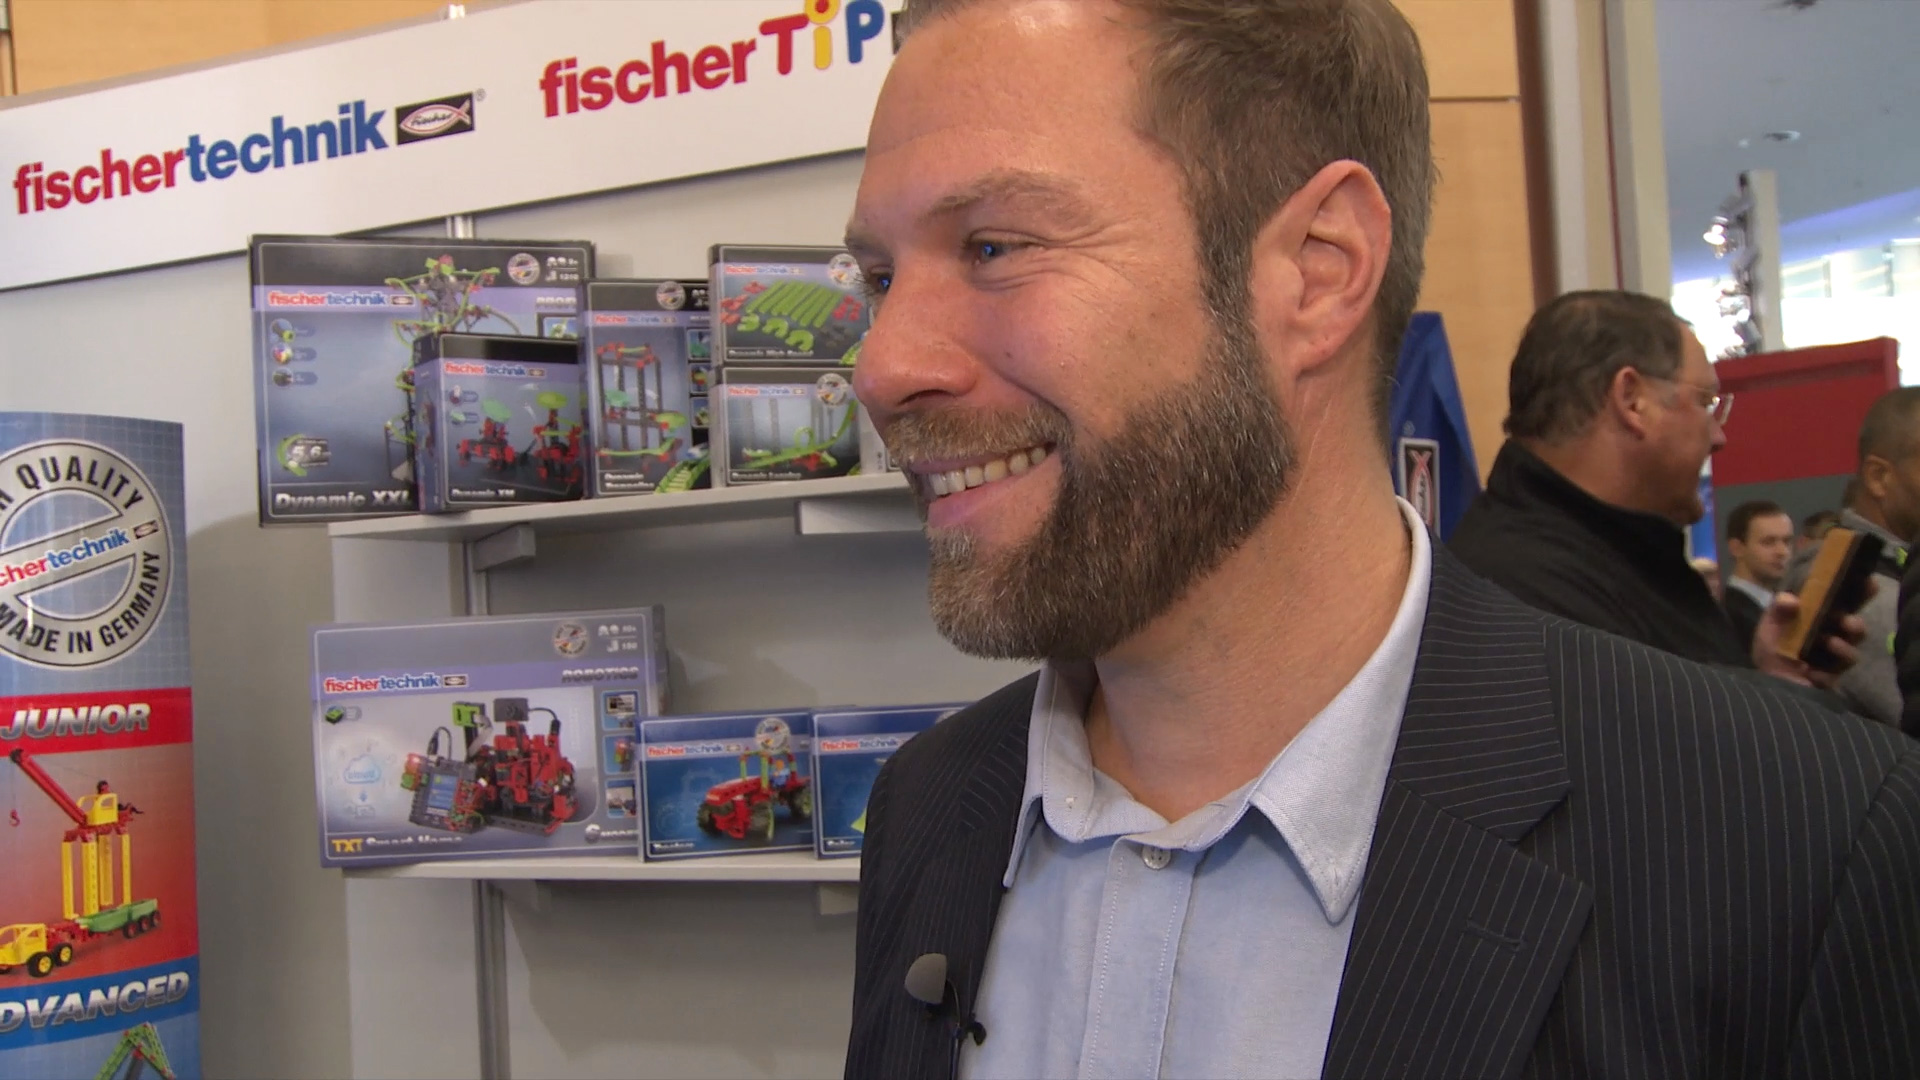 MesseTV contribution Fischertechnik host Juergen Groh